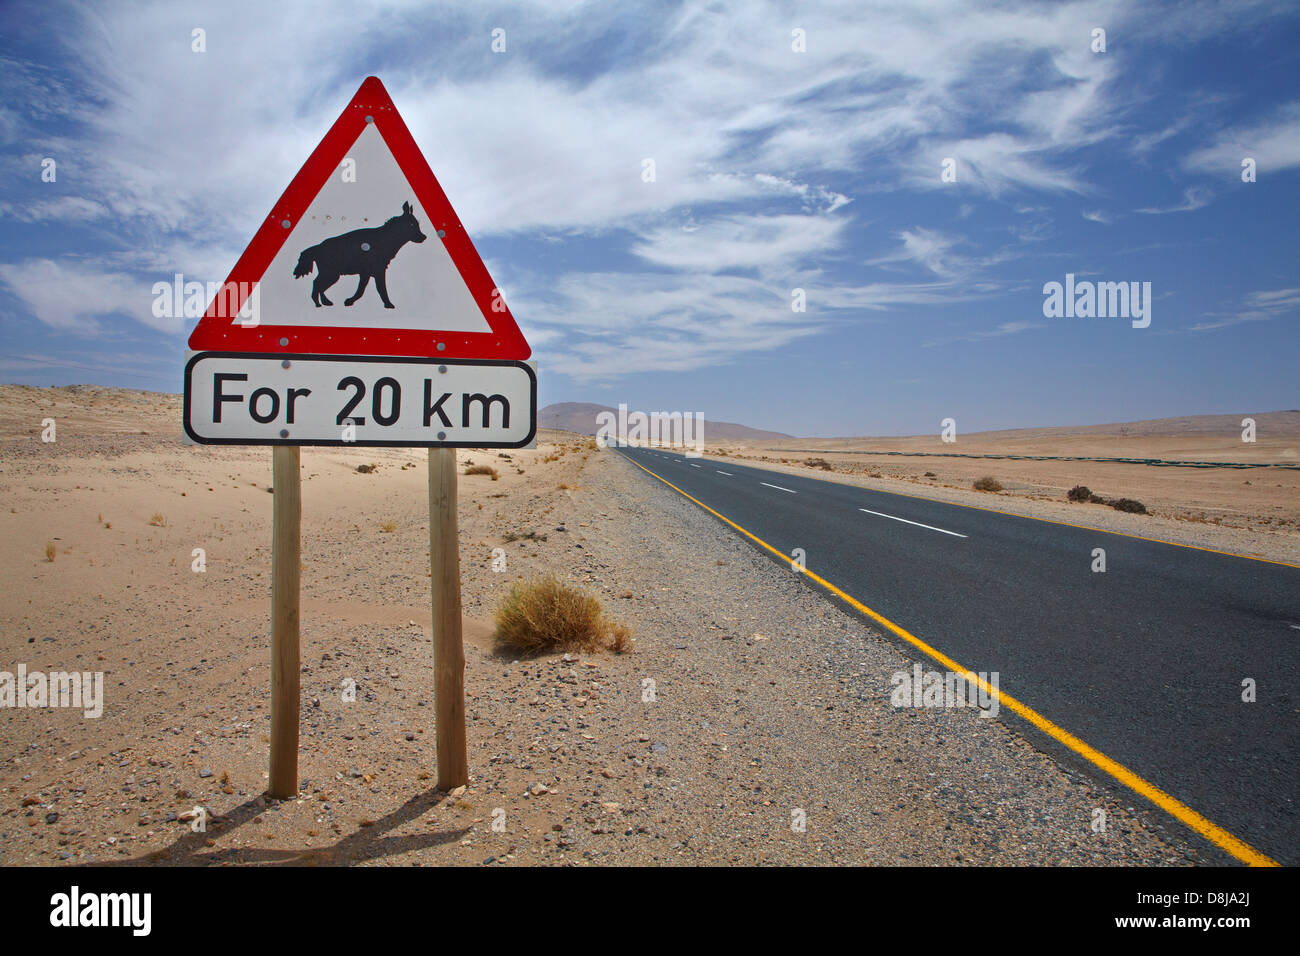 Braune Hyäne Straße Warnschild auf B4 Straße zwischen Aus und Lüderitz, Südliches Namibia, Afrika Stockfoto